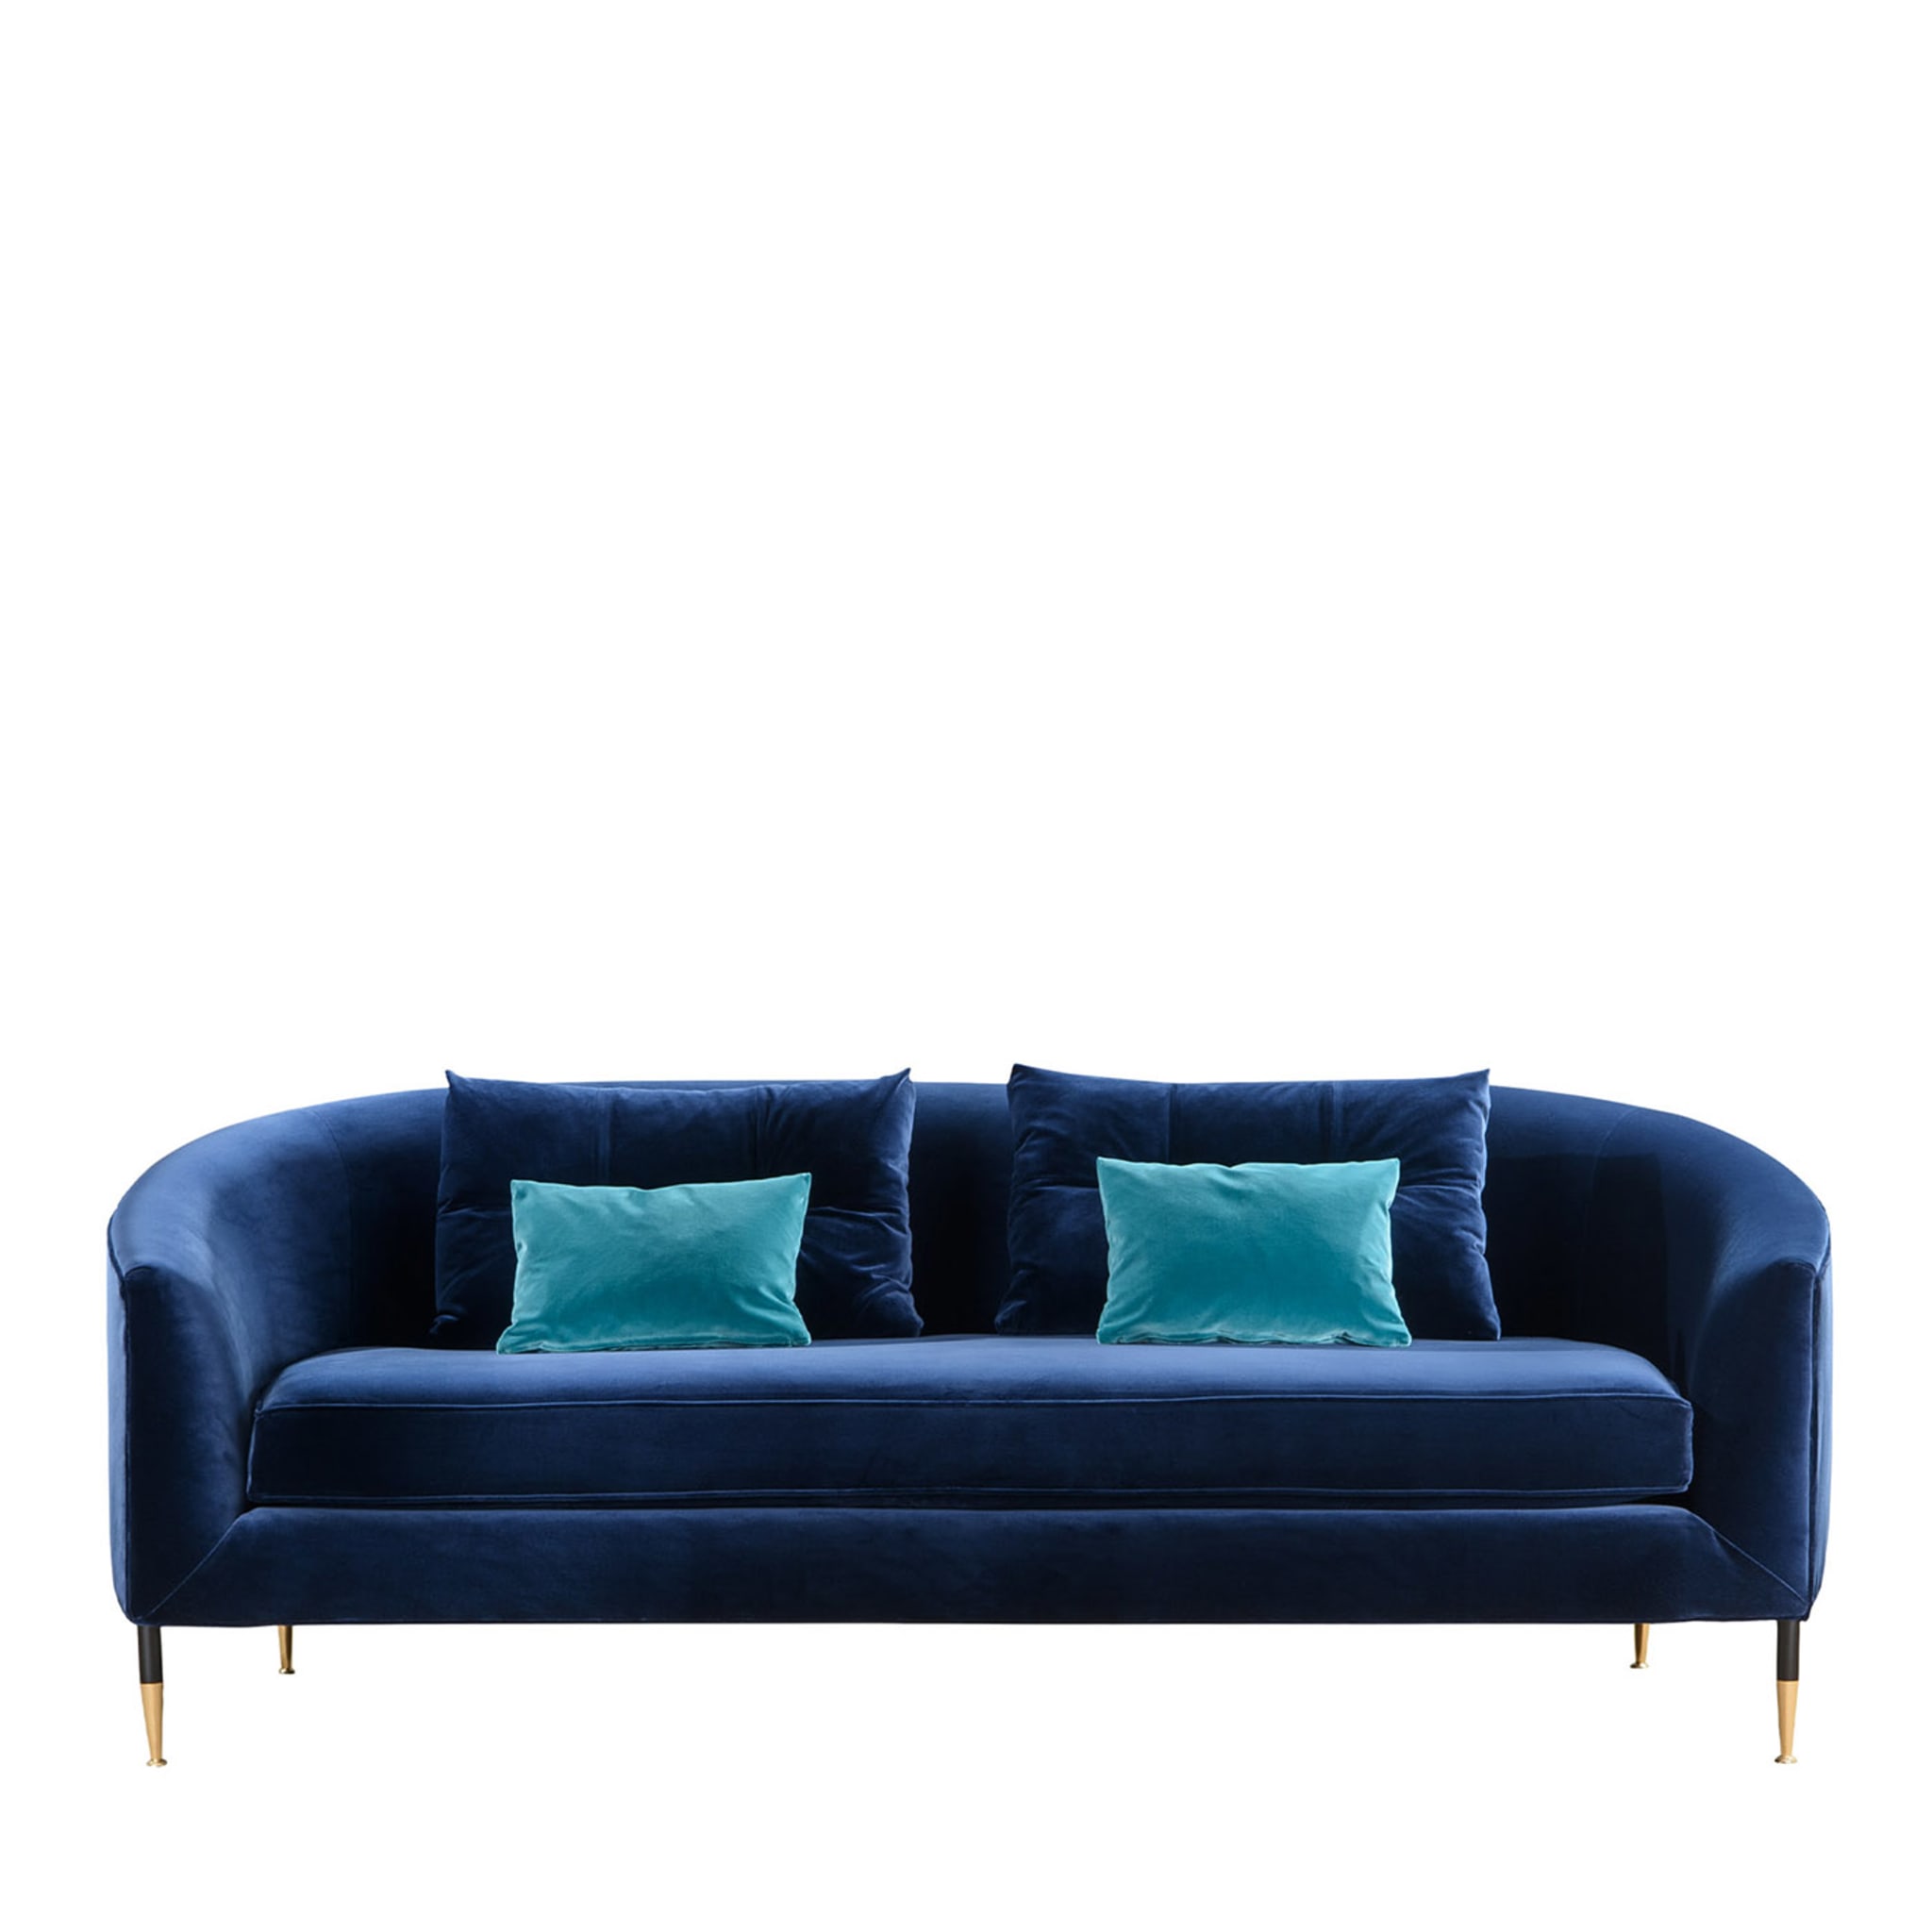 Mademoiselle Blue Sofa - Main view